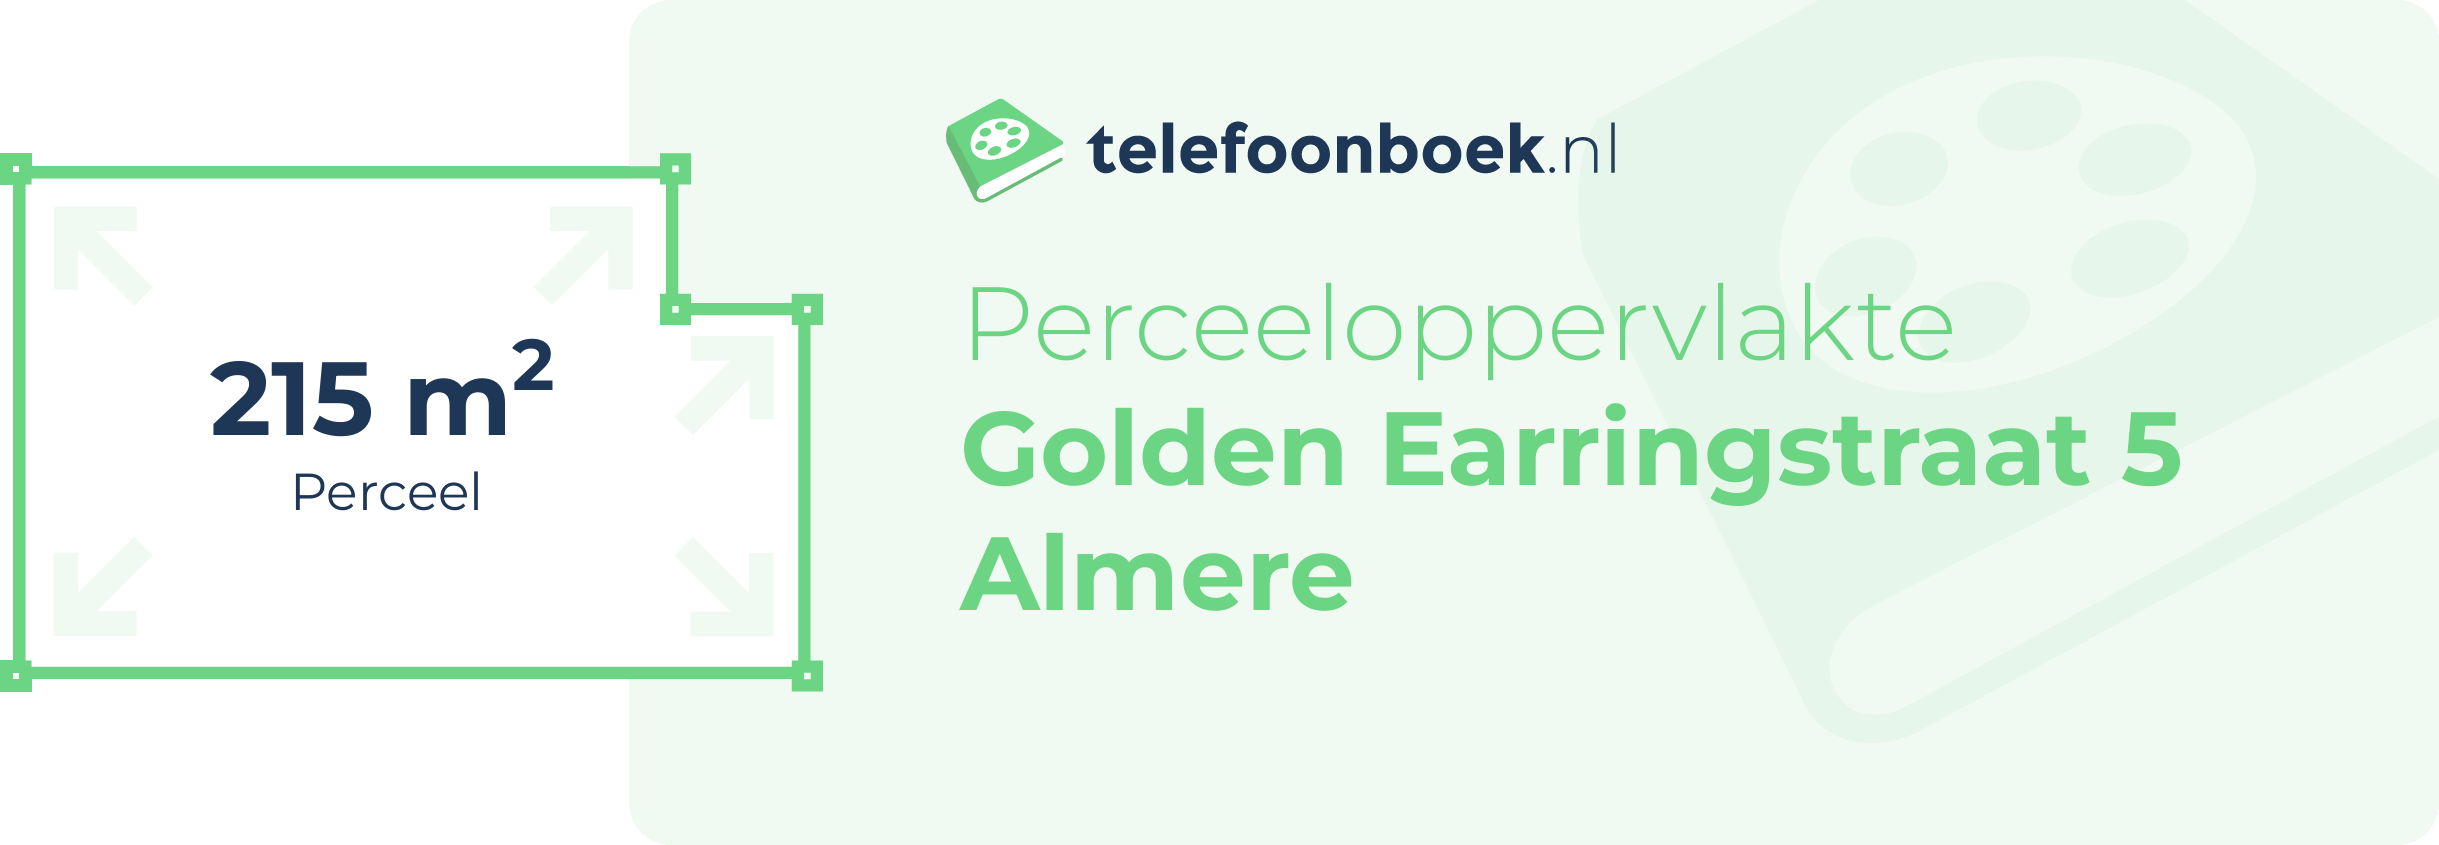 Perceeloppervlakte Golden Earringstraat 5 Almere